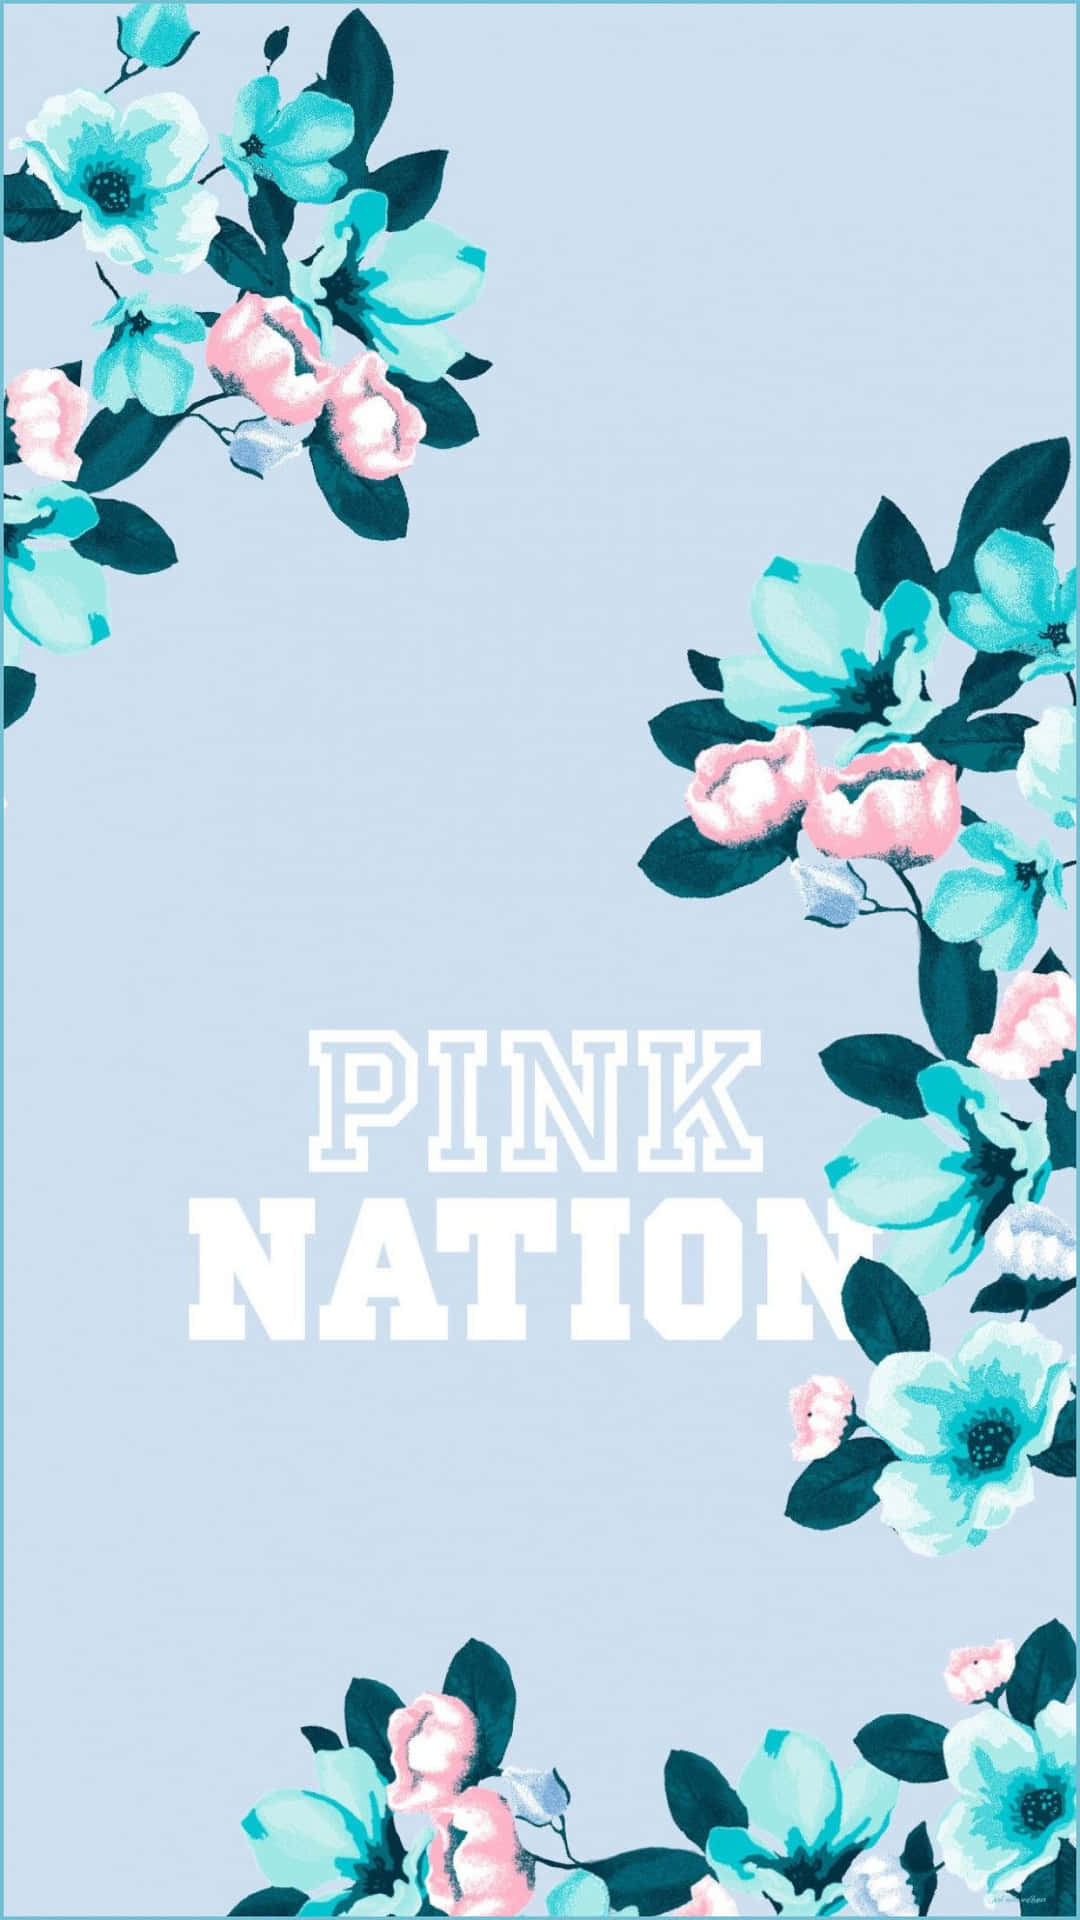 Compralas Últimas Tendencias De Moda Con Pink Nation. Fondo de pantalla